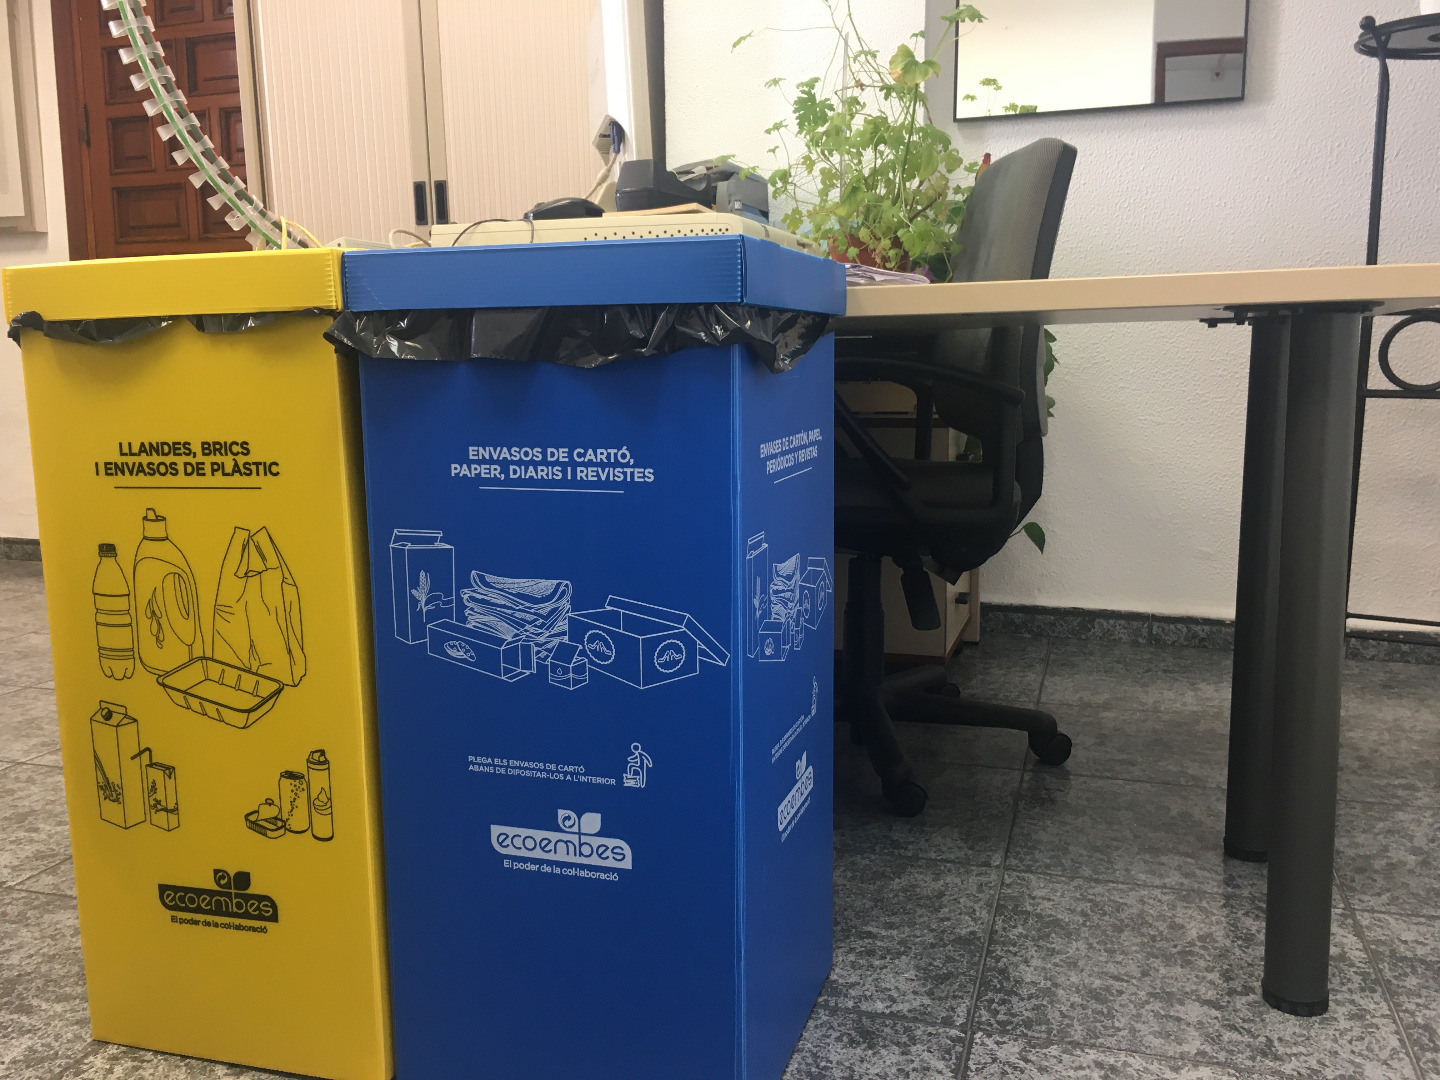 Dénia instal•la 66 punts de recollida selectiva en les dependències municipals per a promoure el reciclatge 